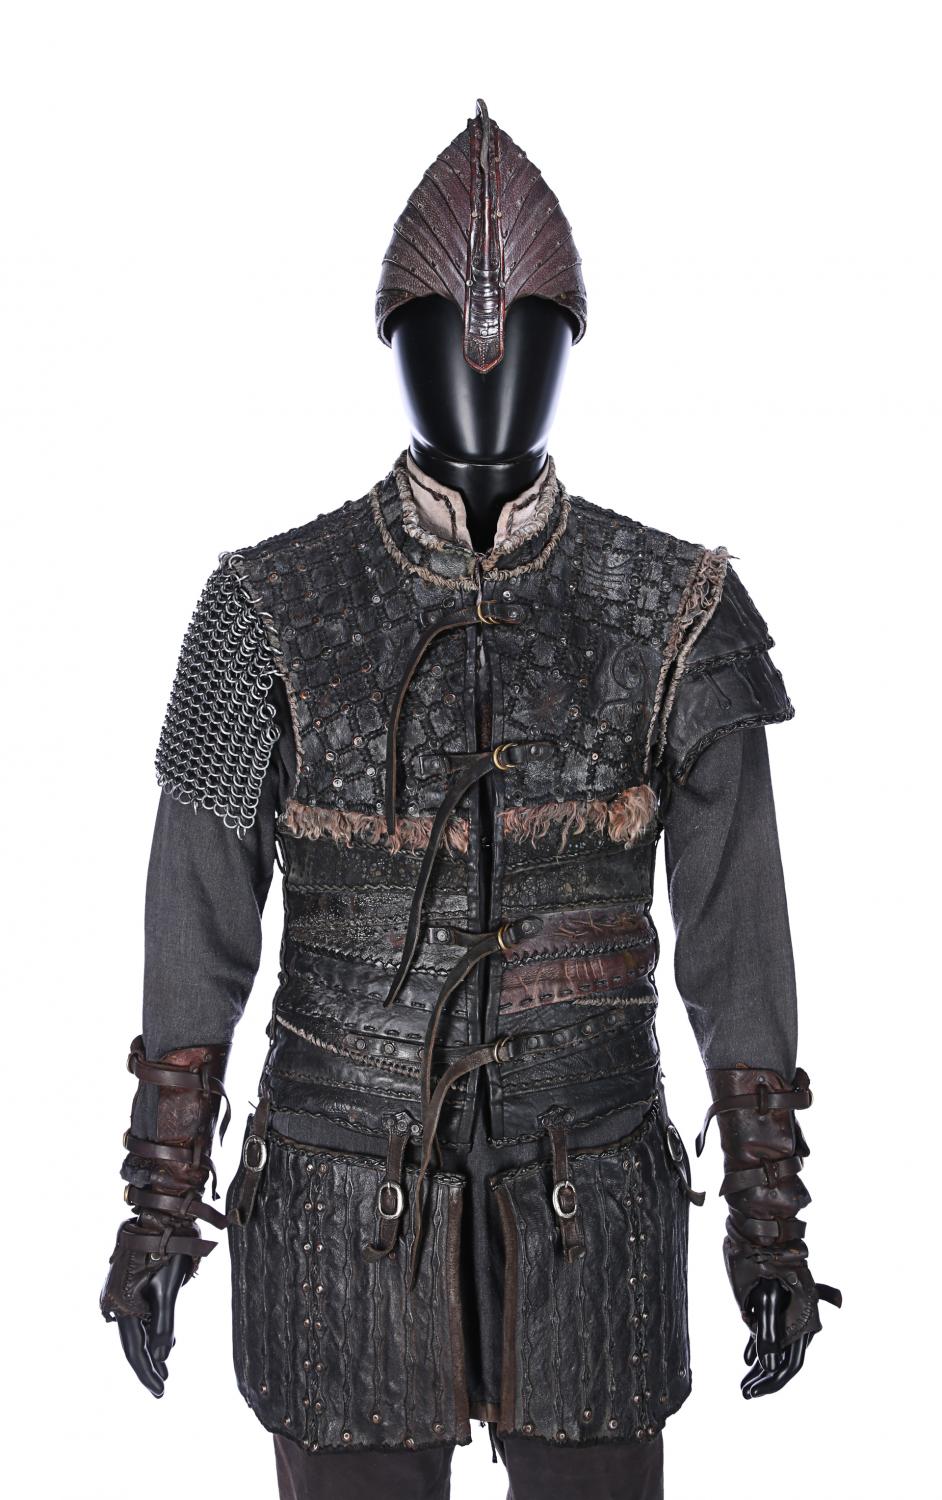 Ivar The Boneless armor (Vikings)